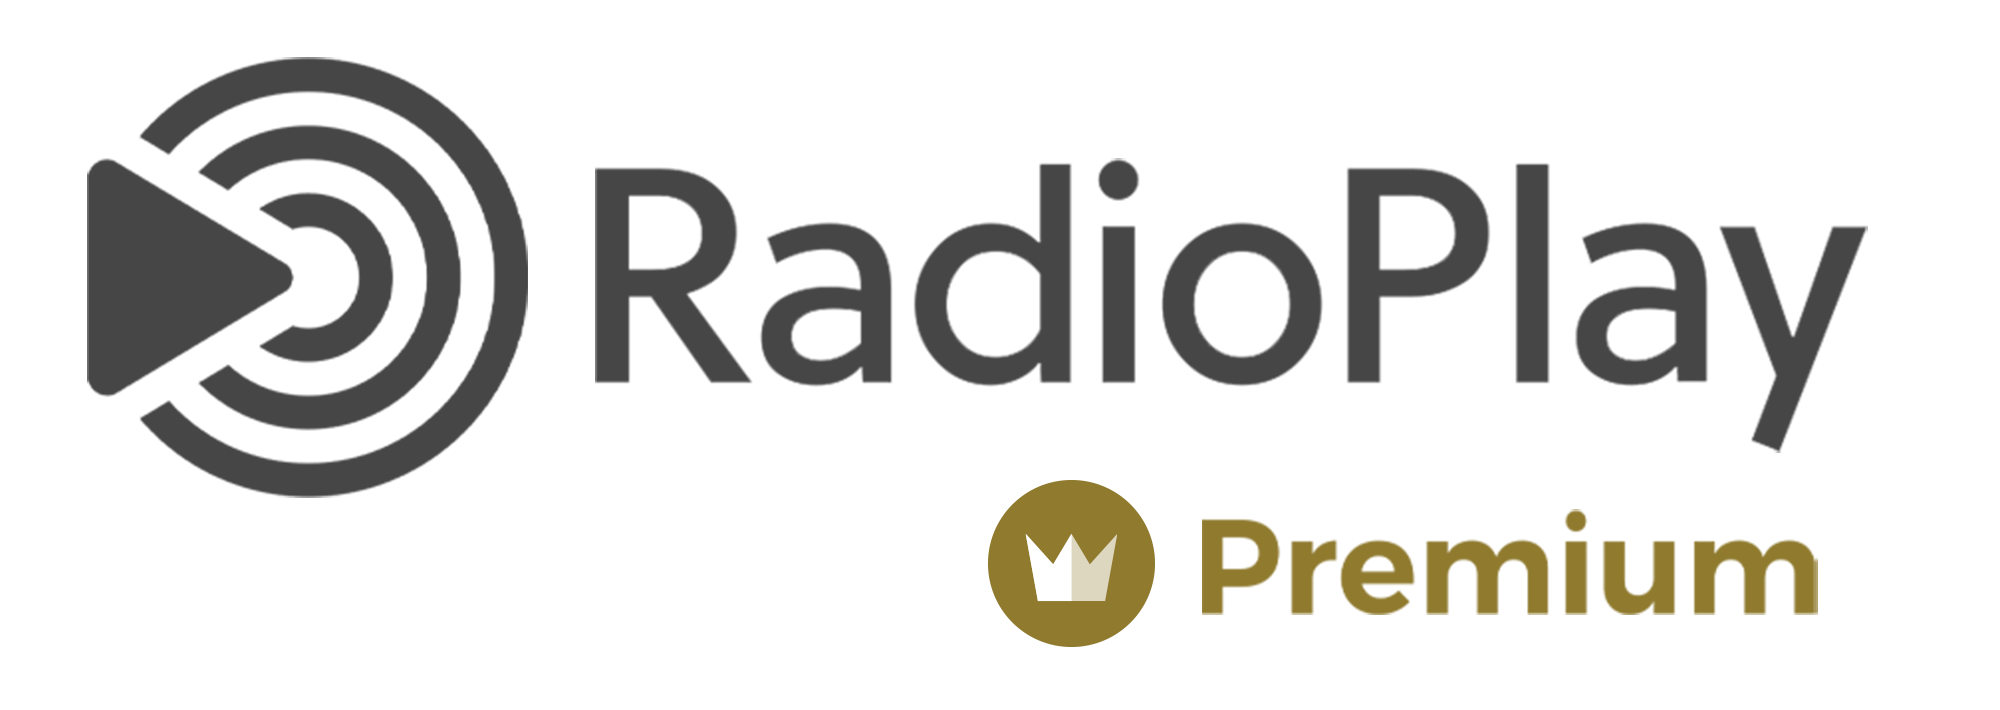 Press Release - Reinventing Radio in Denmark - Bauer Media